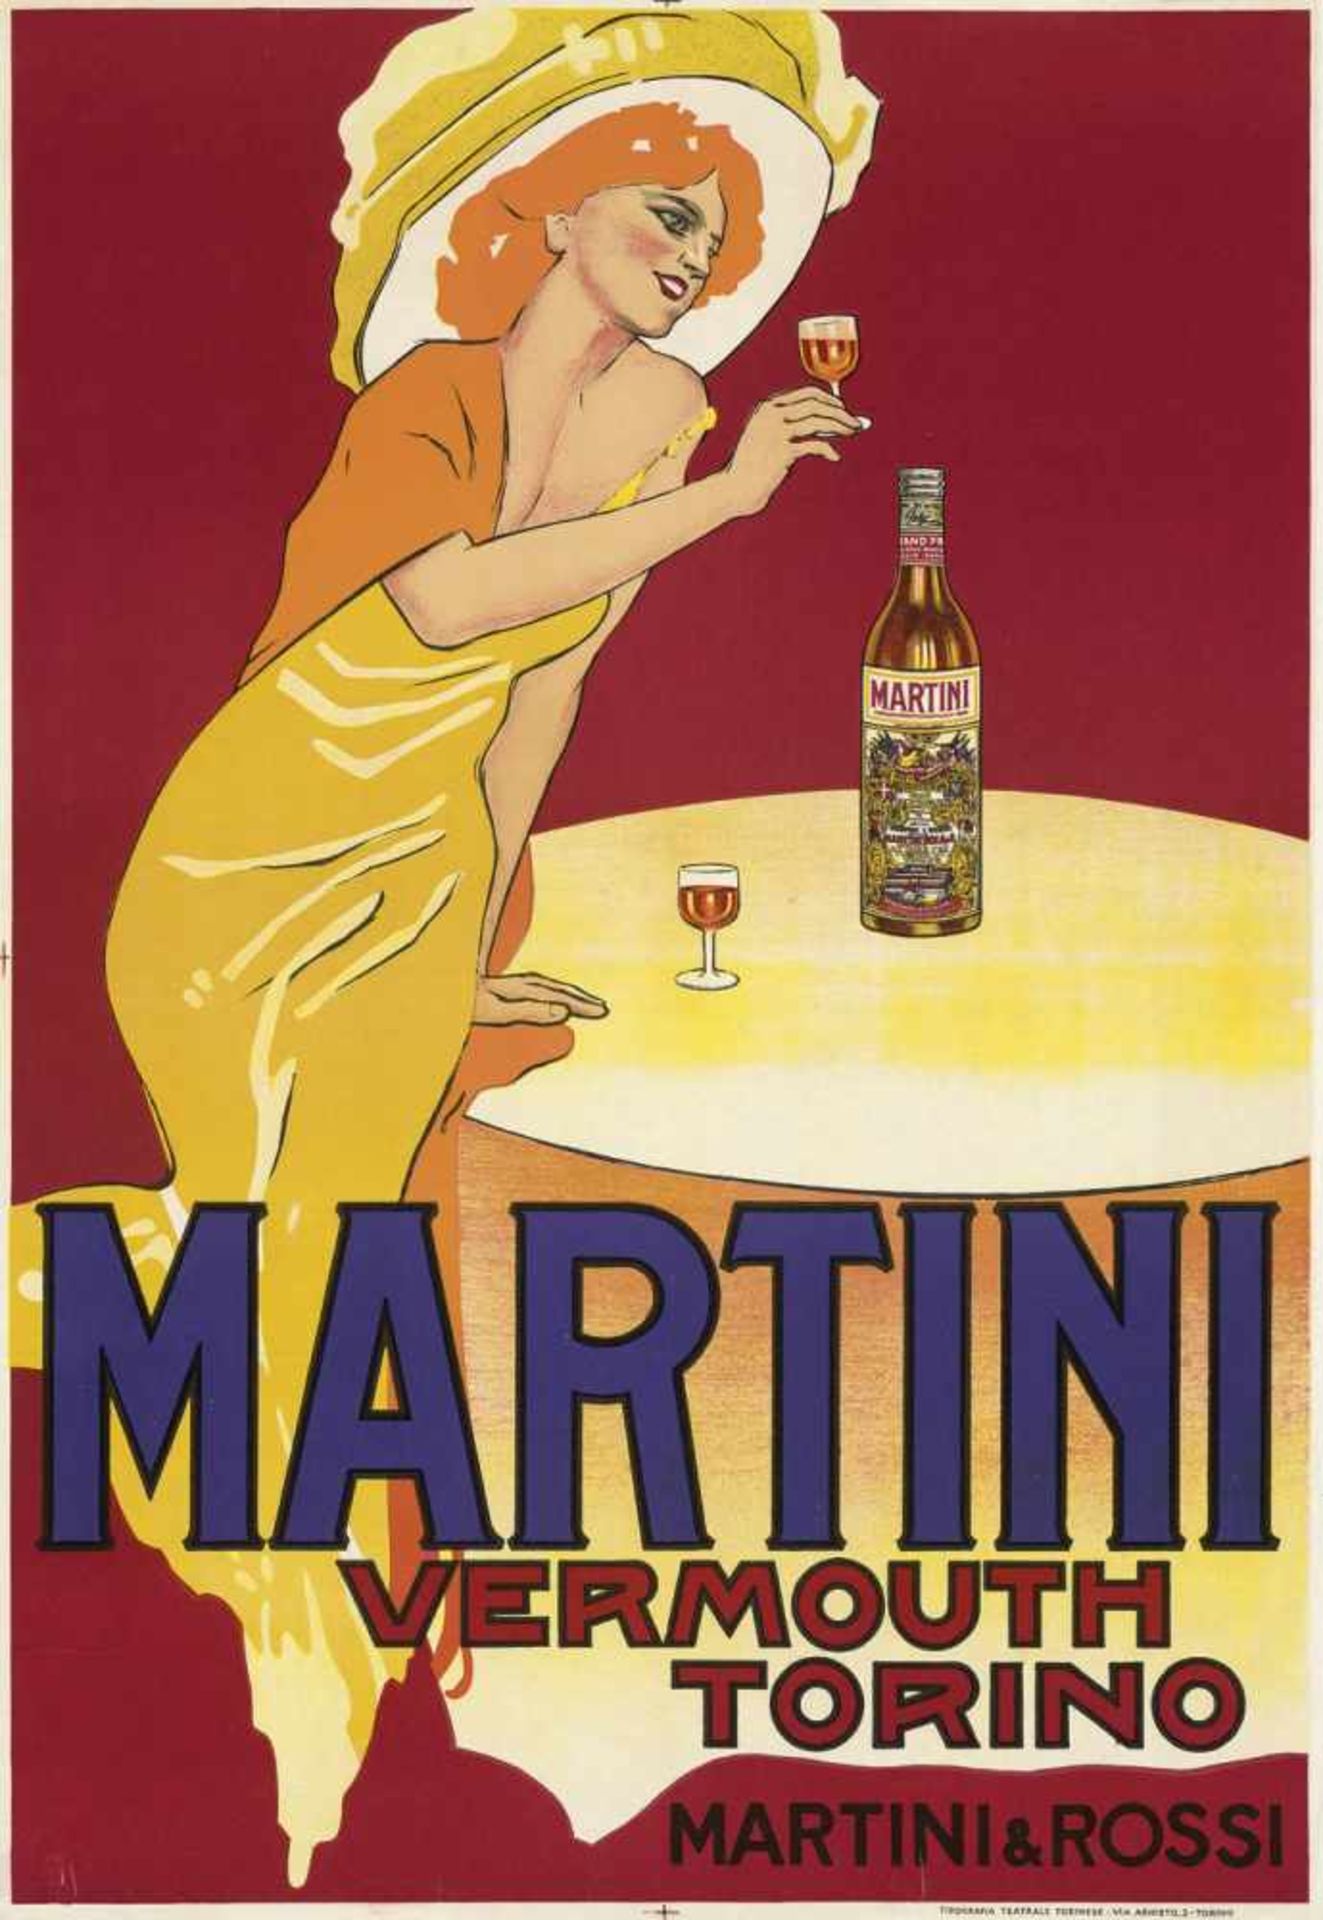 Dudovich, Marcello: MartiniDudovich, Marcello. Martini, Vermouth Torino. Martini & Rossi-